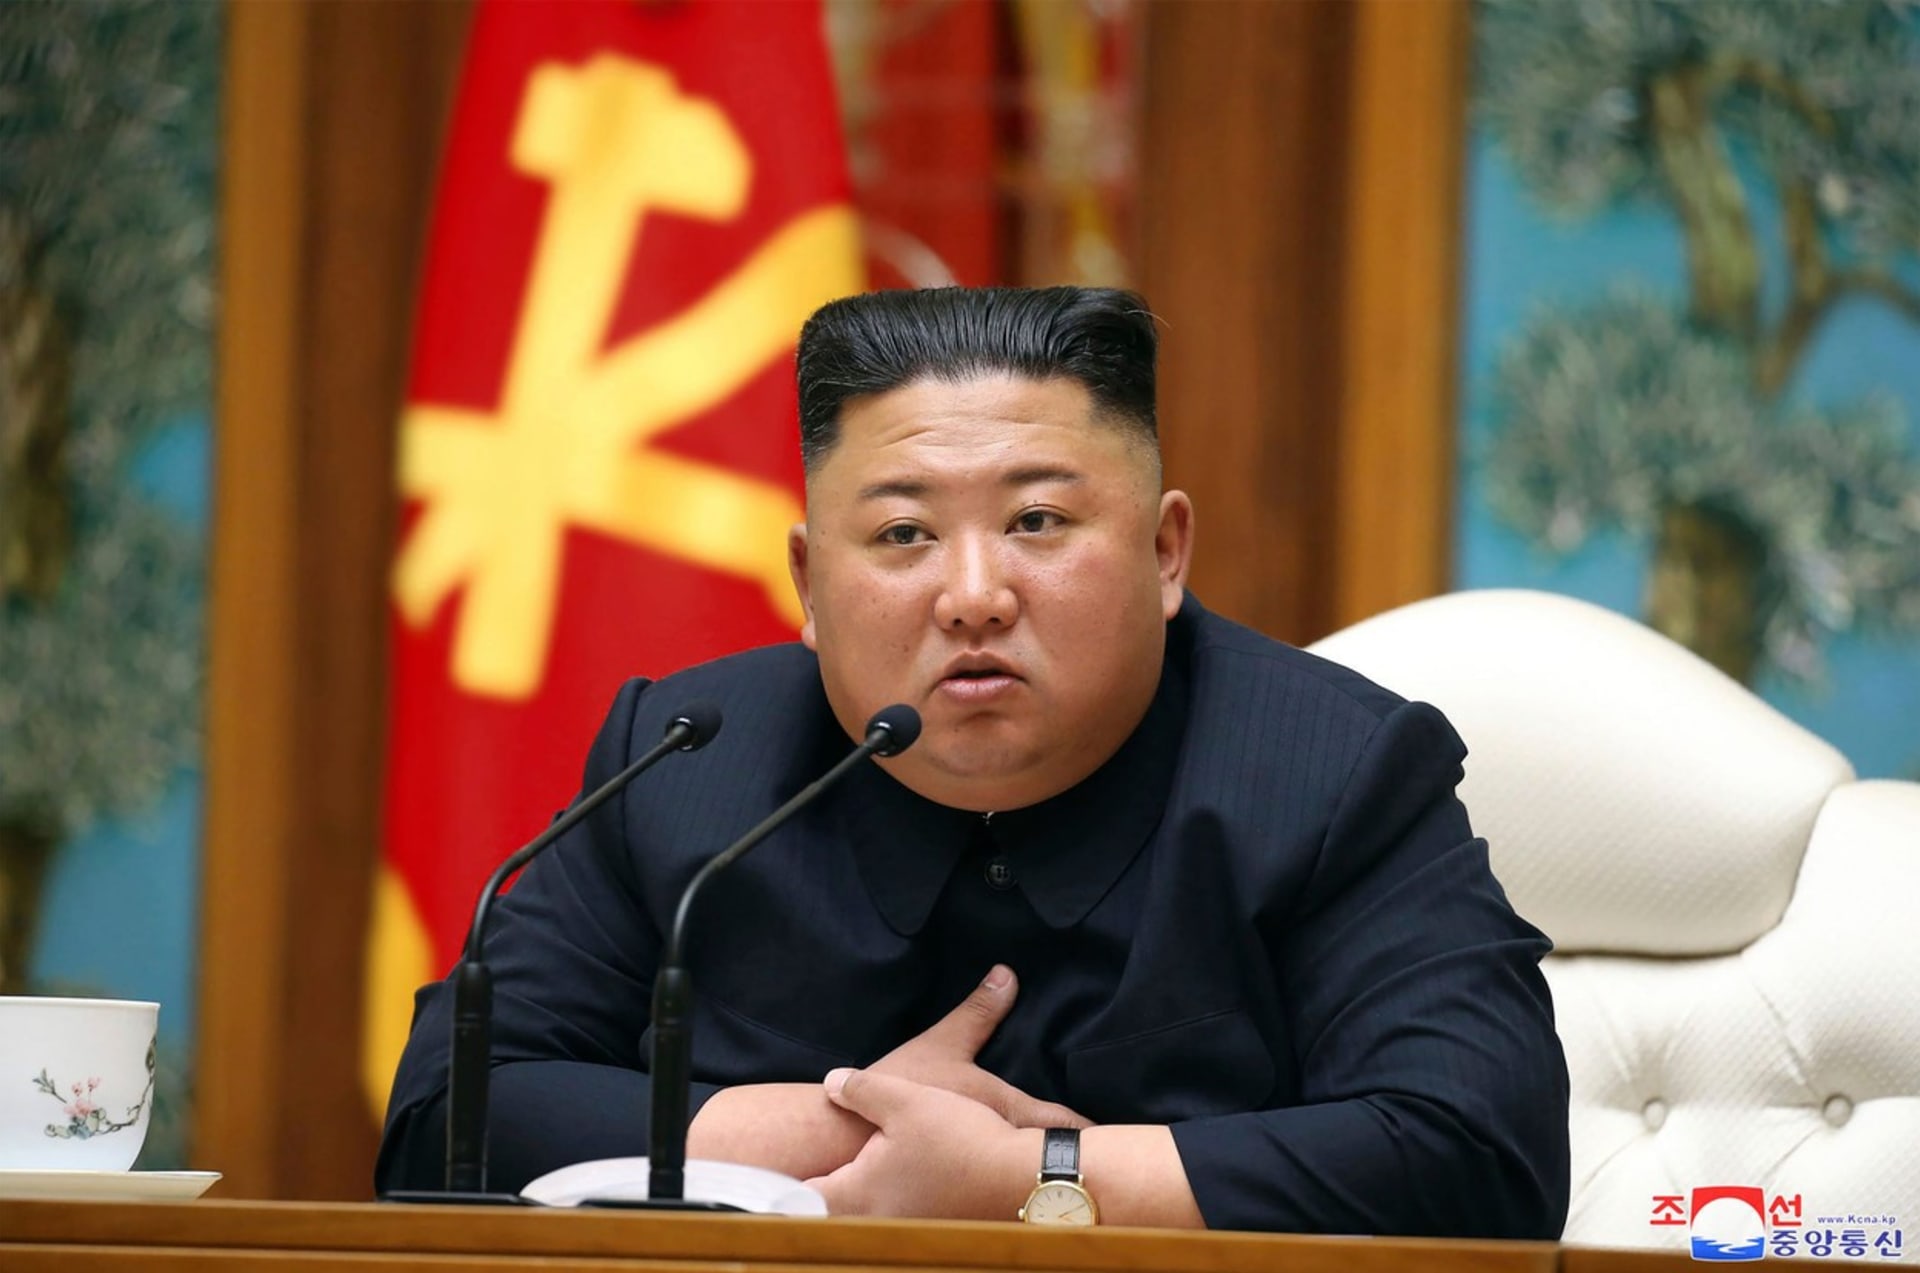 Kim Čong-un chce bojovat s globálním oteplováním 1